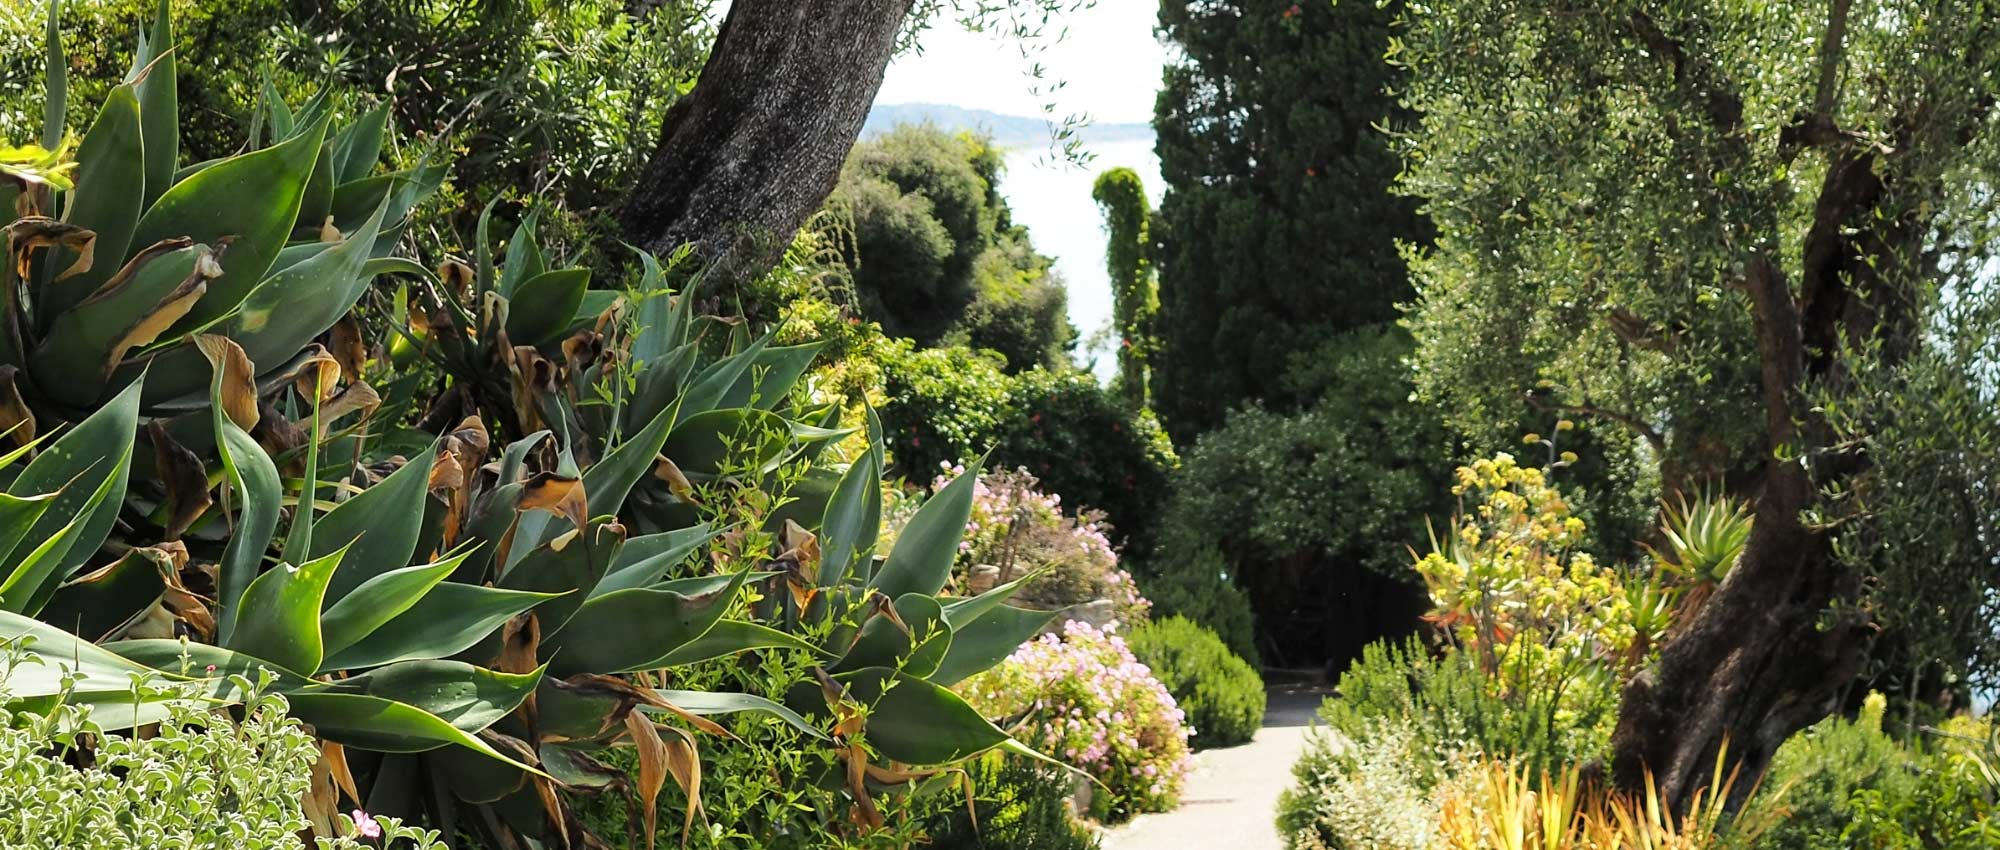 Quelles plantes choisir pour un jardin méditerranéen ? - Elle